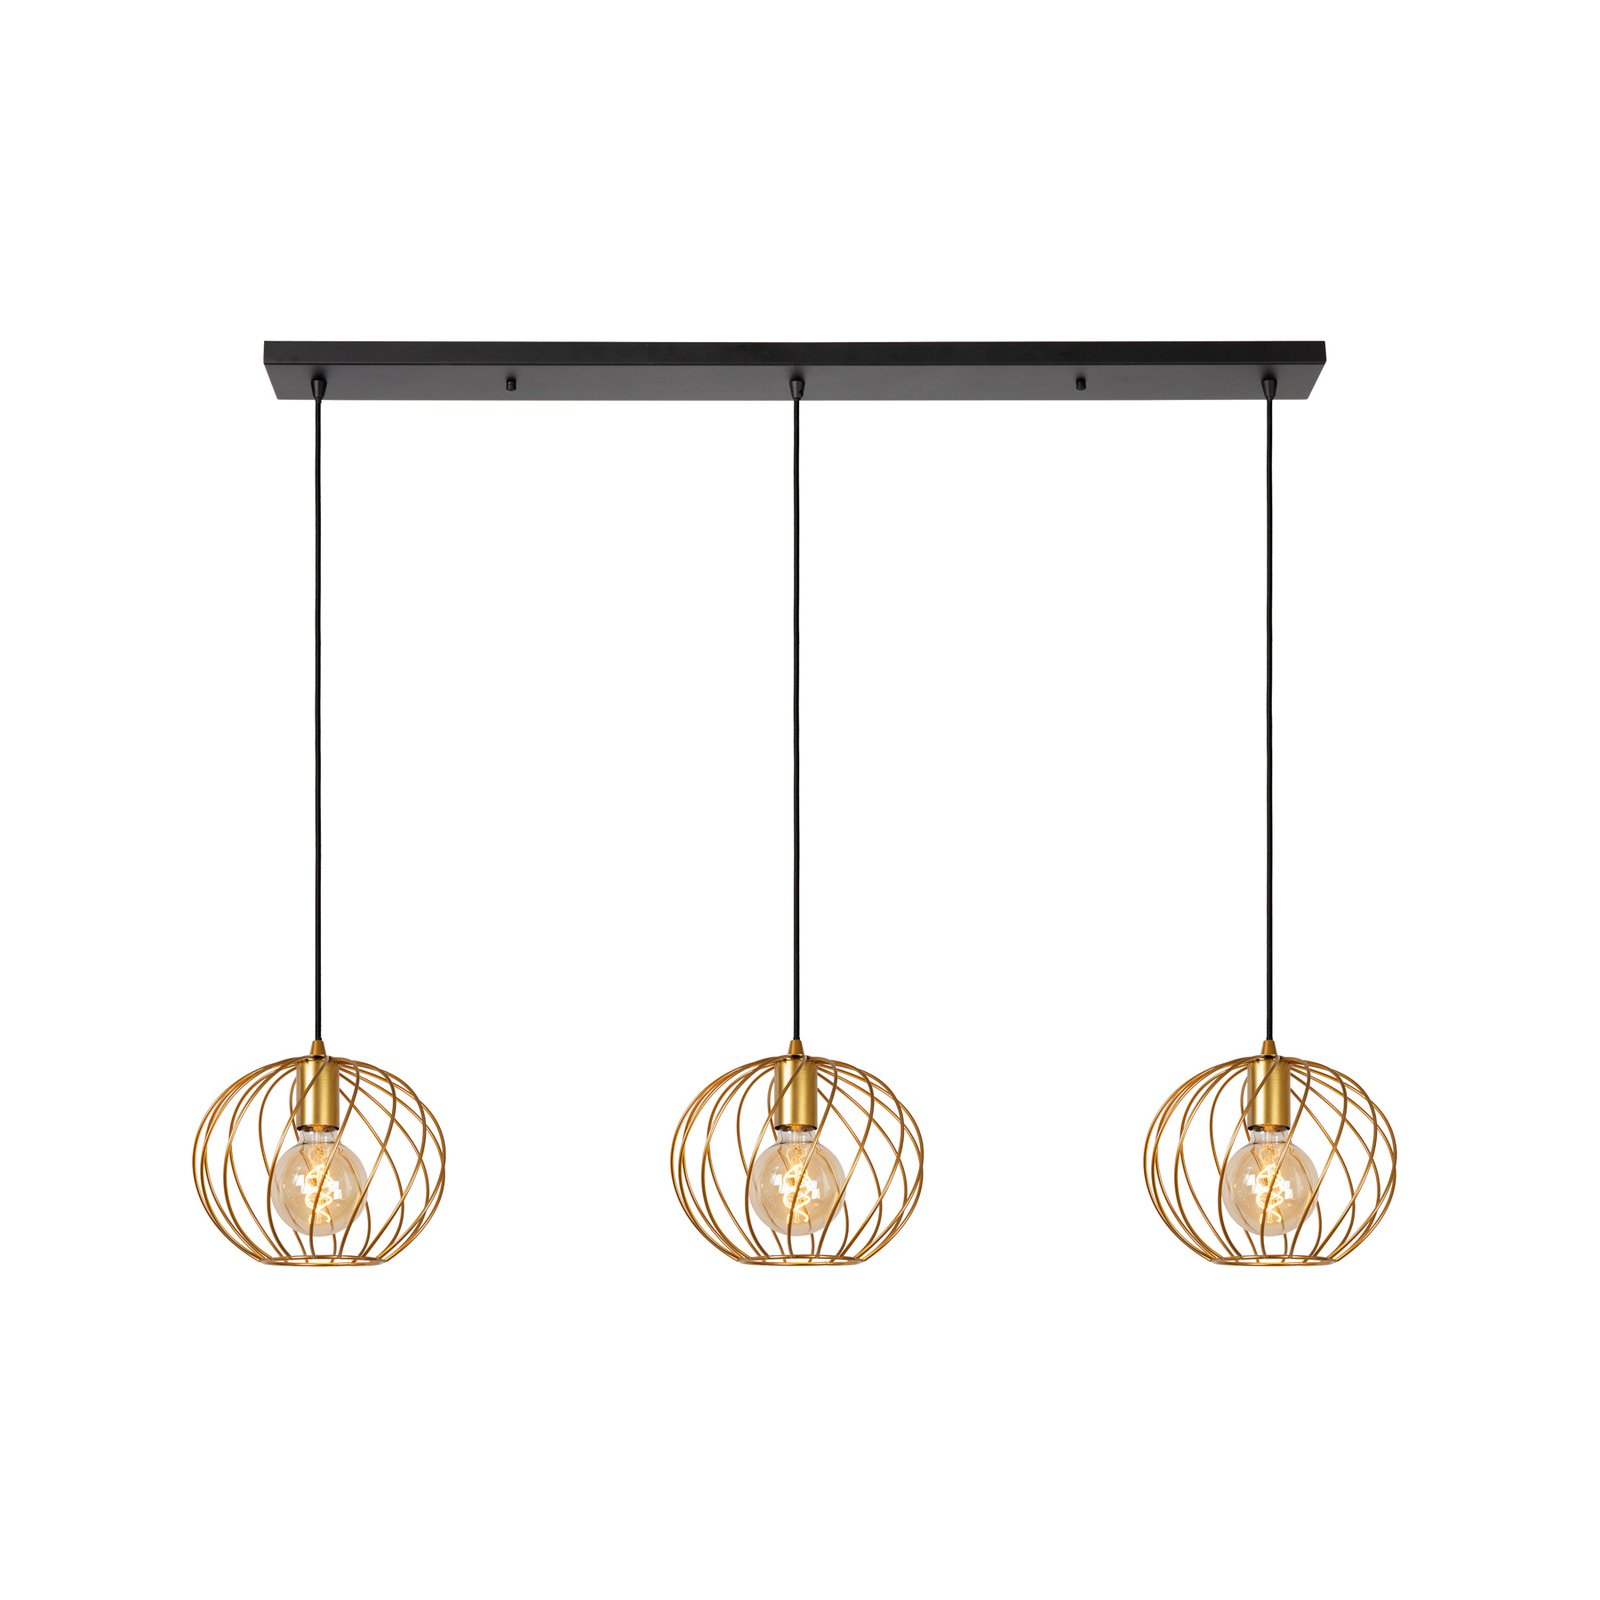 Danza pendant light, 3-bulb, oblong, gold